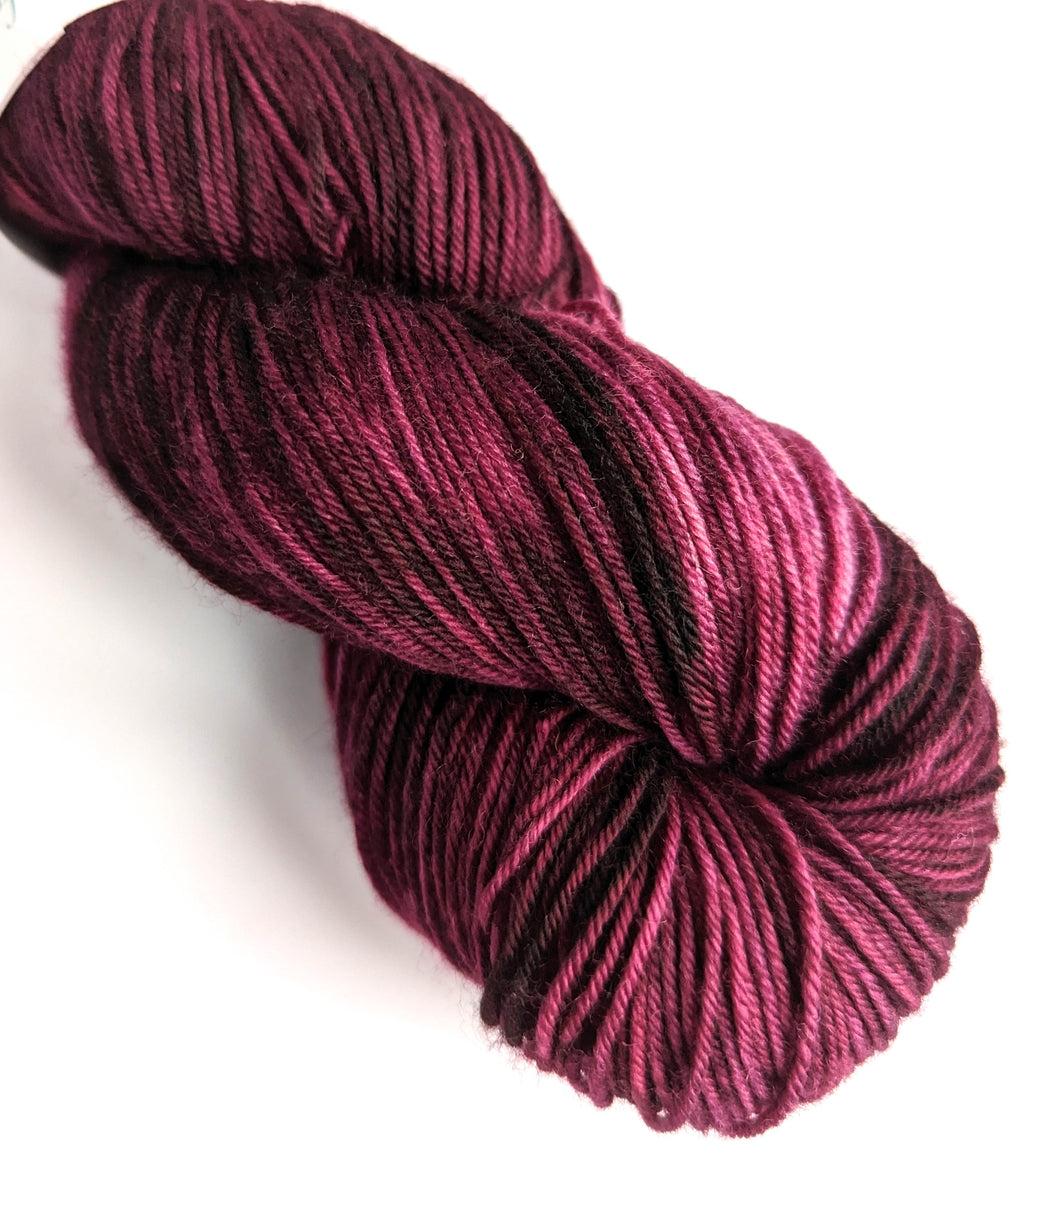 Redplant on a superwash merino/nylon sock yarn.